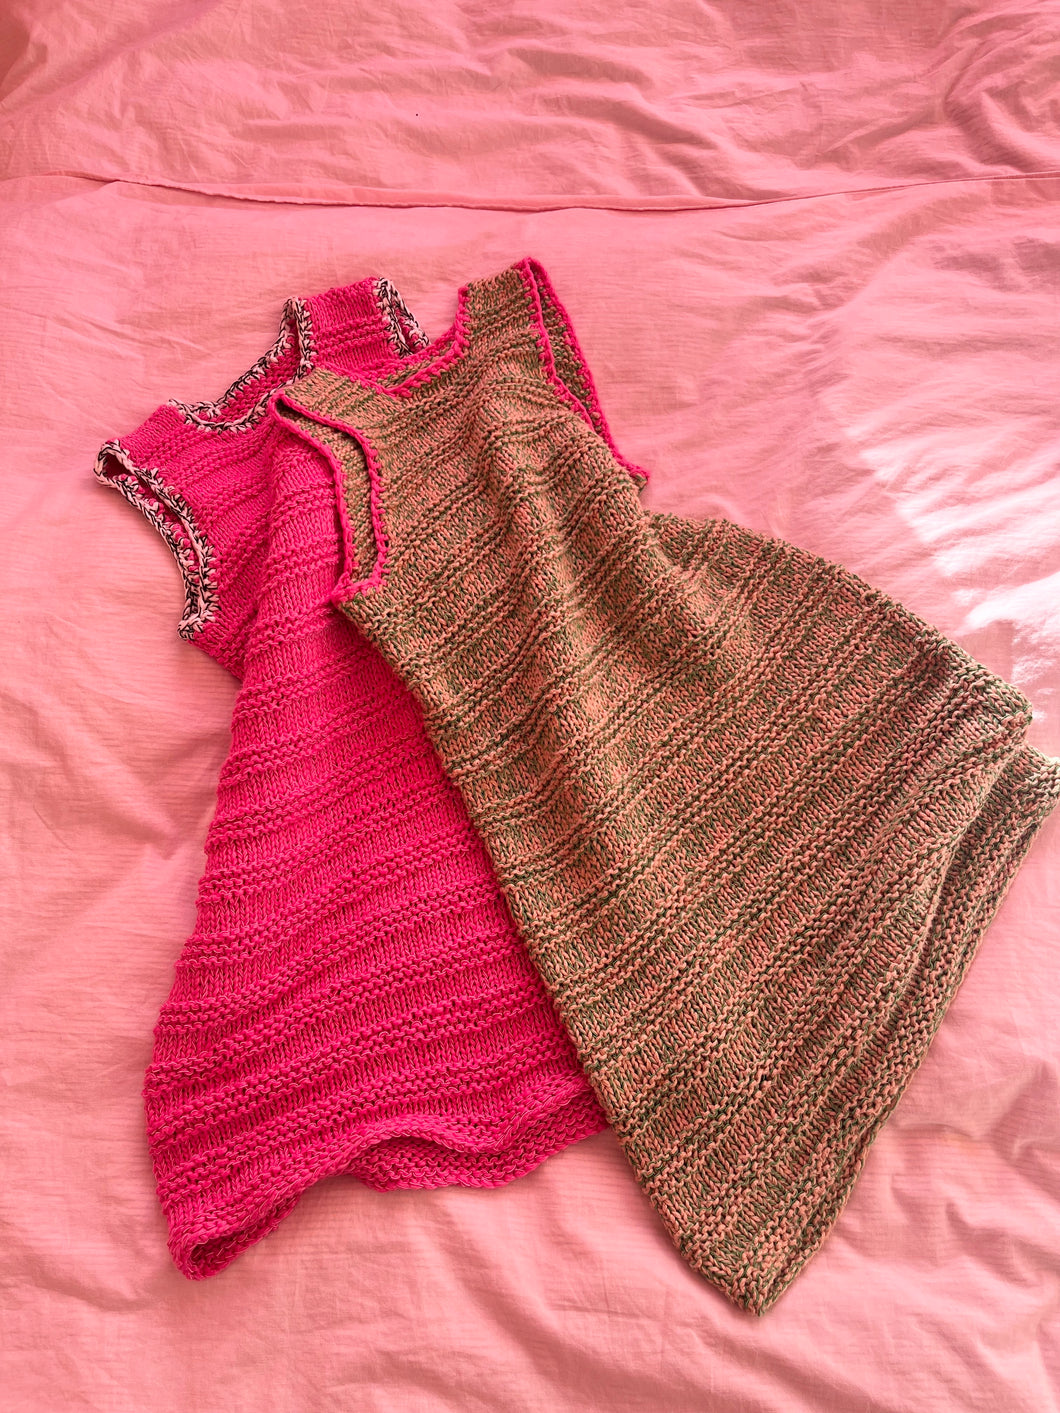 Spring dress knitting kit